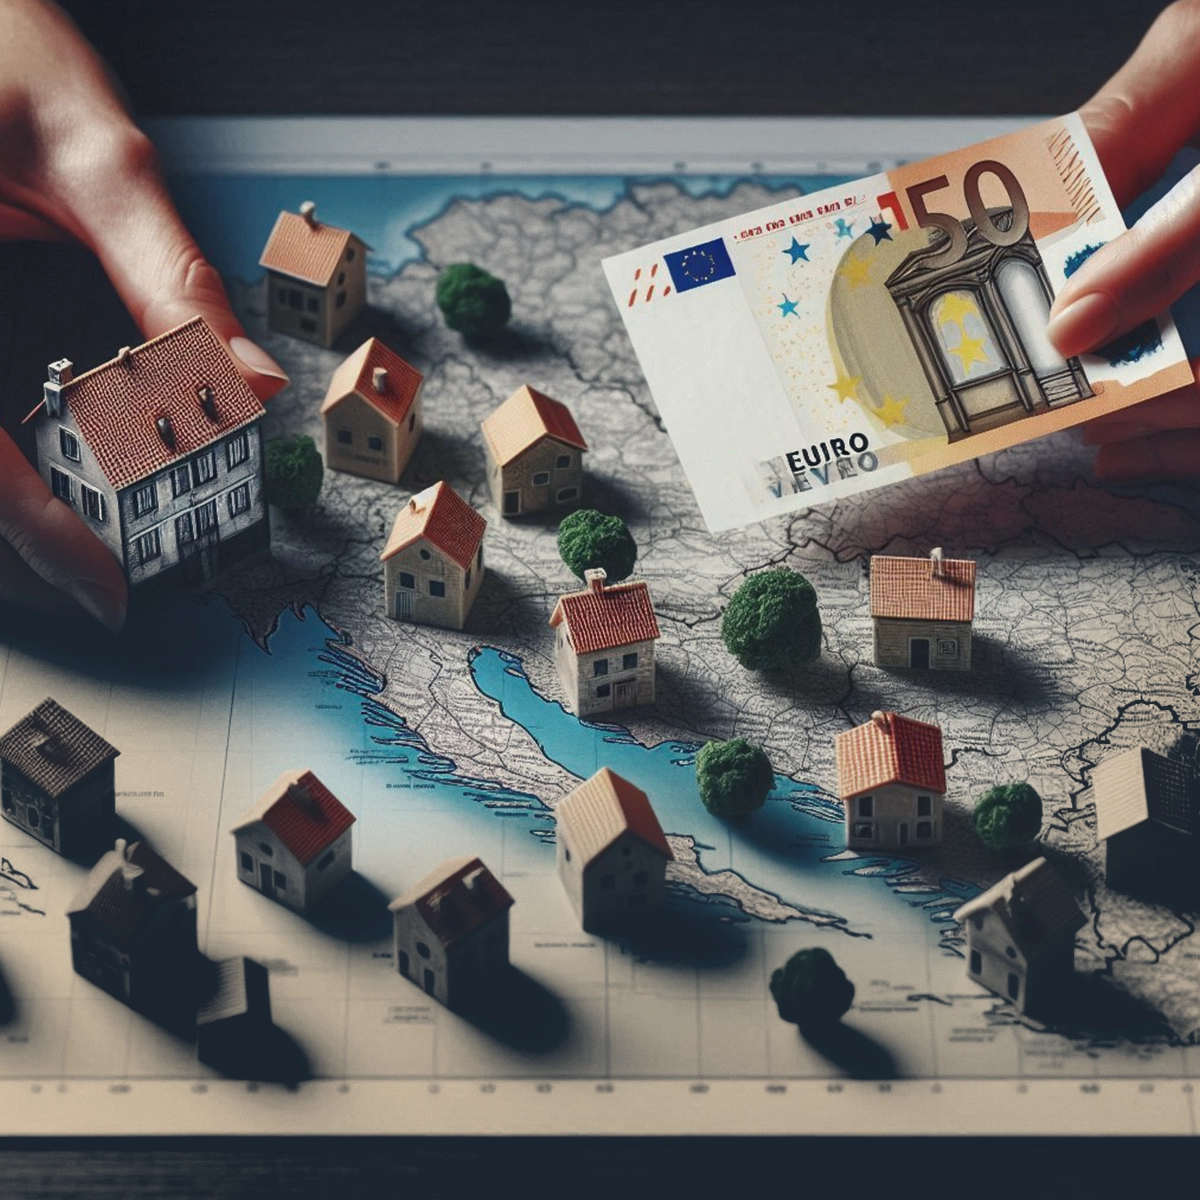 تفاوت قیمت خانه در کرواسی بر اساس منطقه شهری